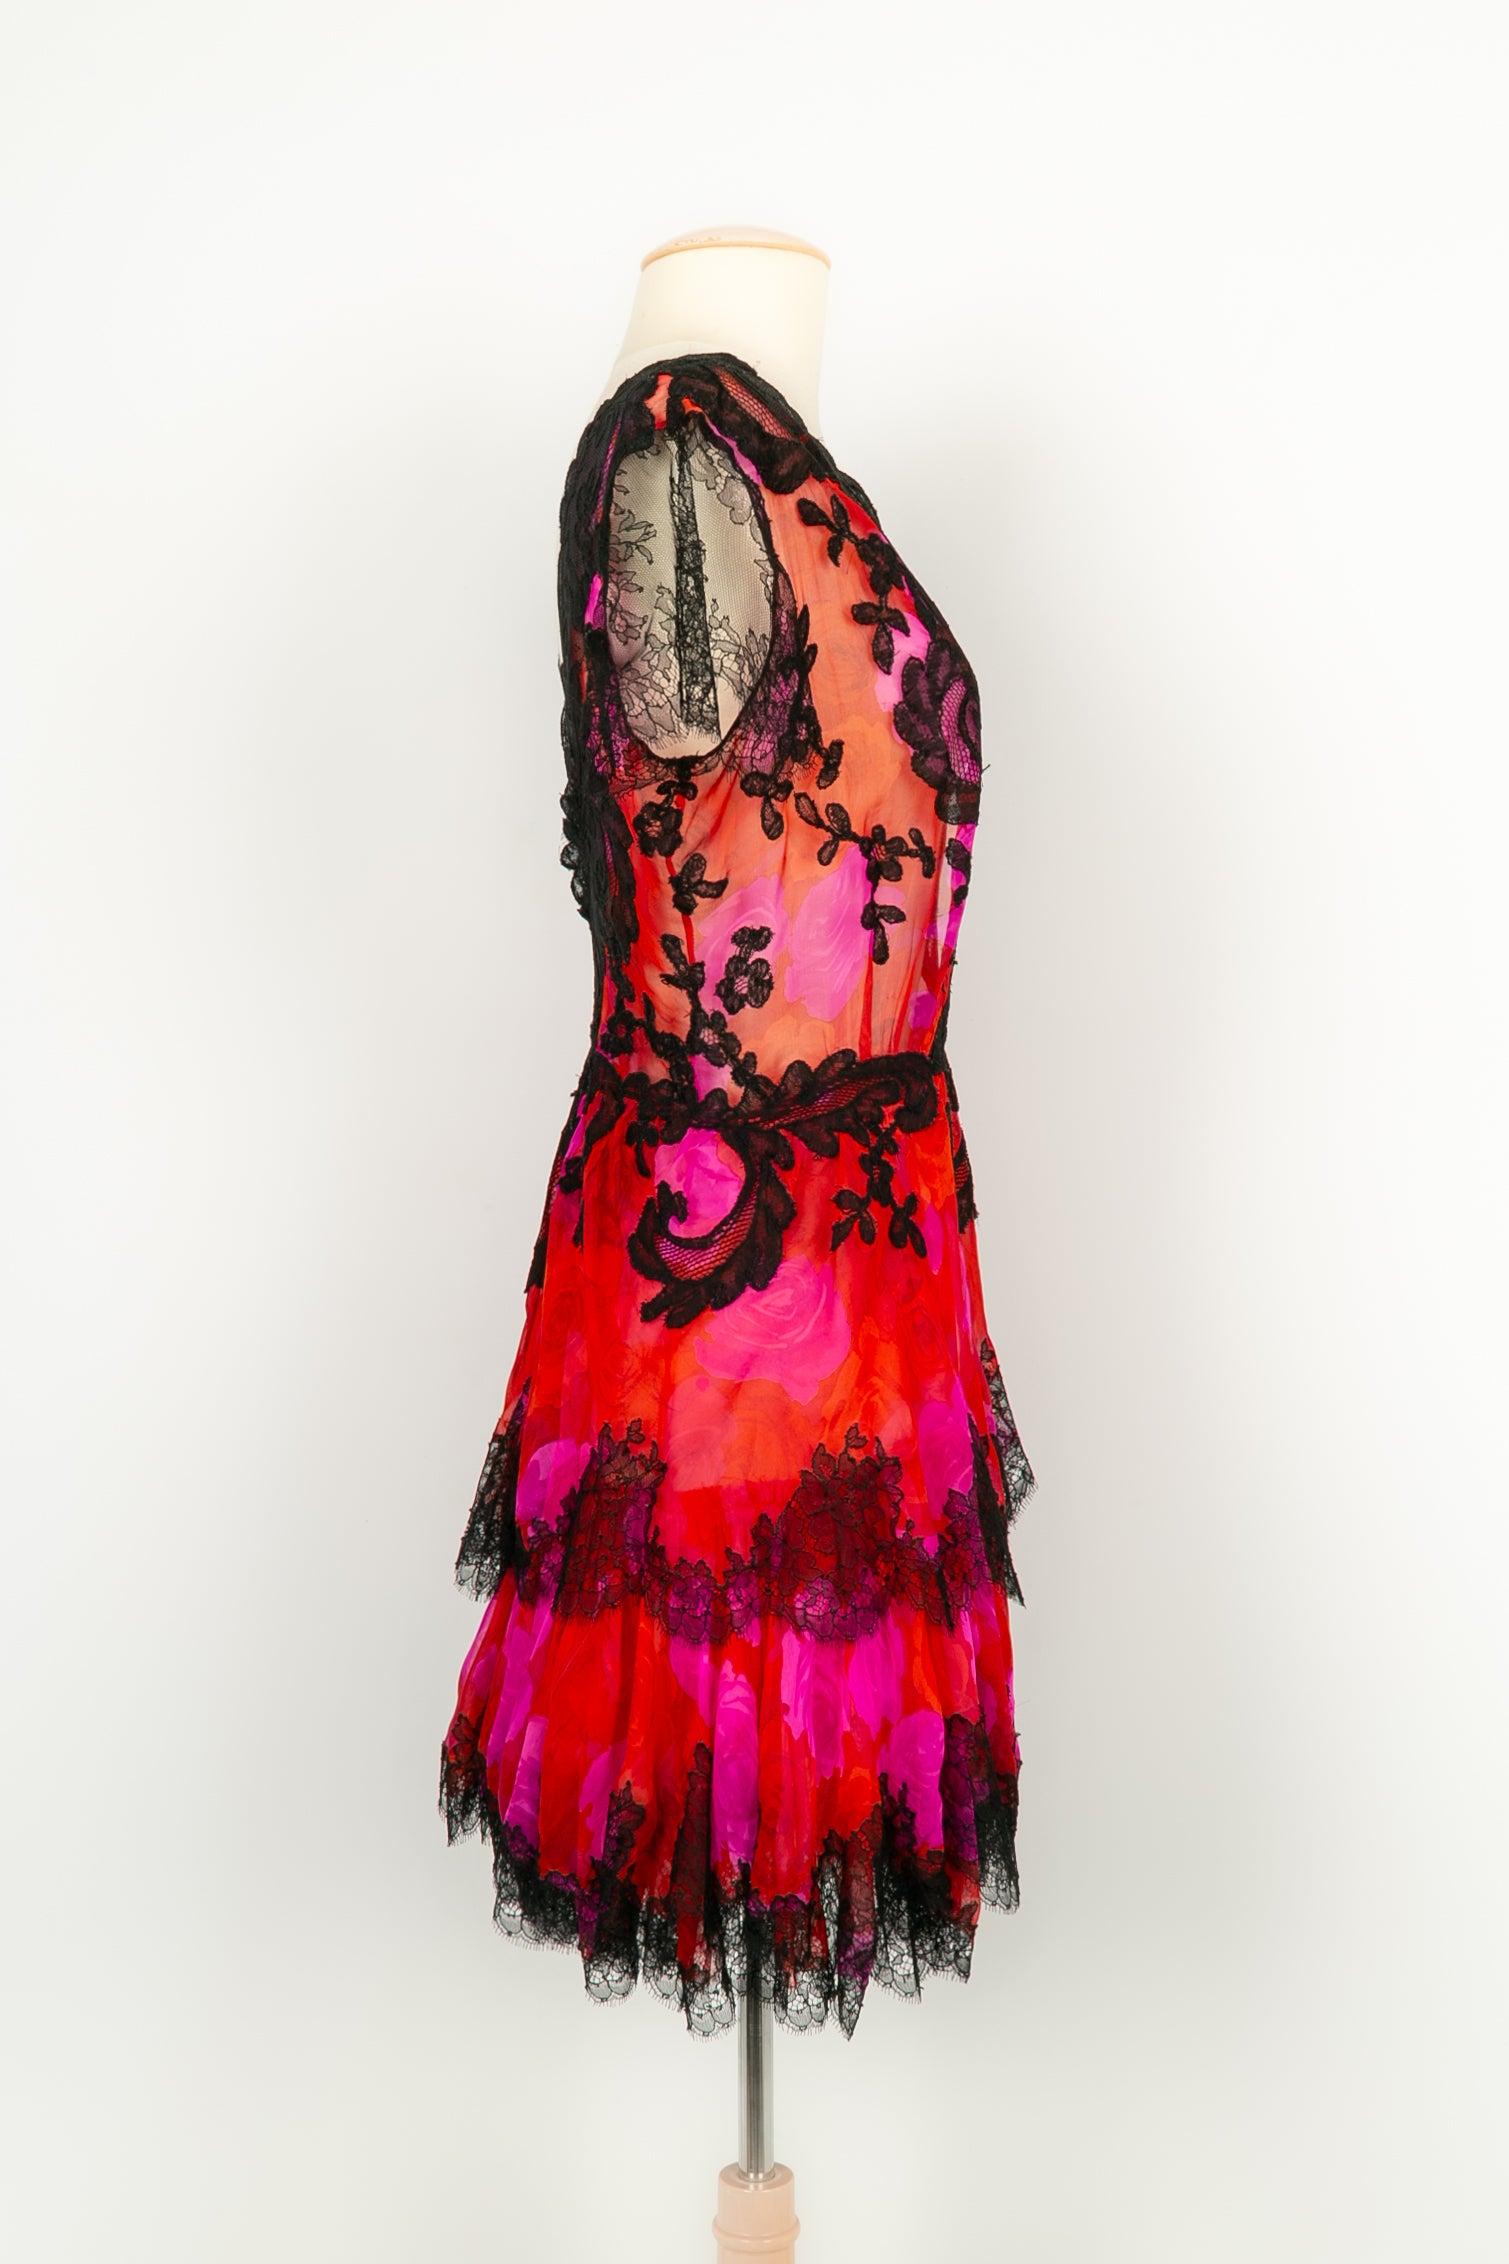 Christian Lacroix - Haute Couture Kleid aus Seidenmusselin und Spitze, in Rot-, Rosa- und Schwarztönen. Wird mit einem Schal verkauft. Keine Größe noch Zusammensetzung Label, es passt ein 36FR.

Zusätzliche Informationen:
Zustand: Sehr guter